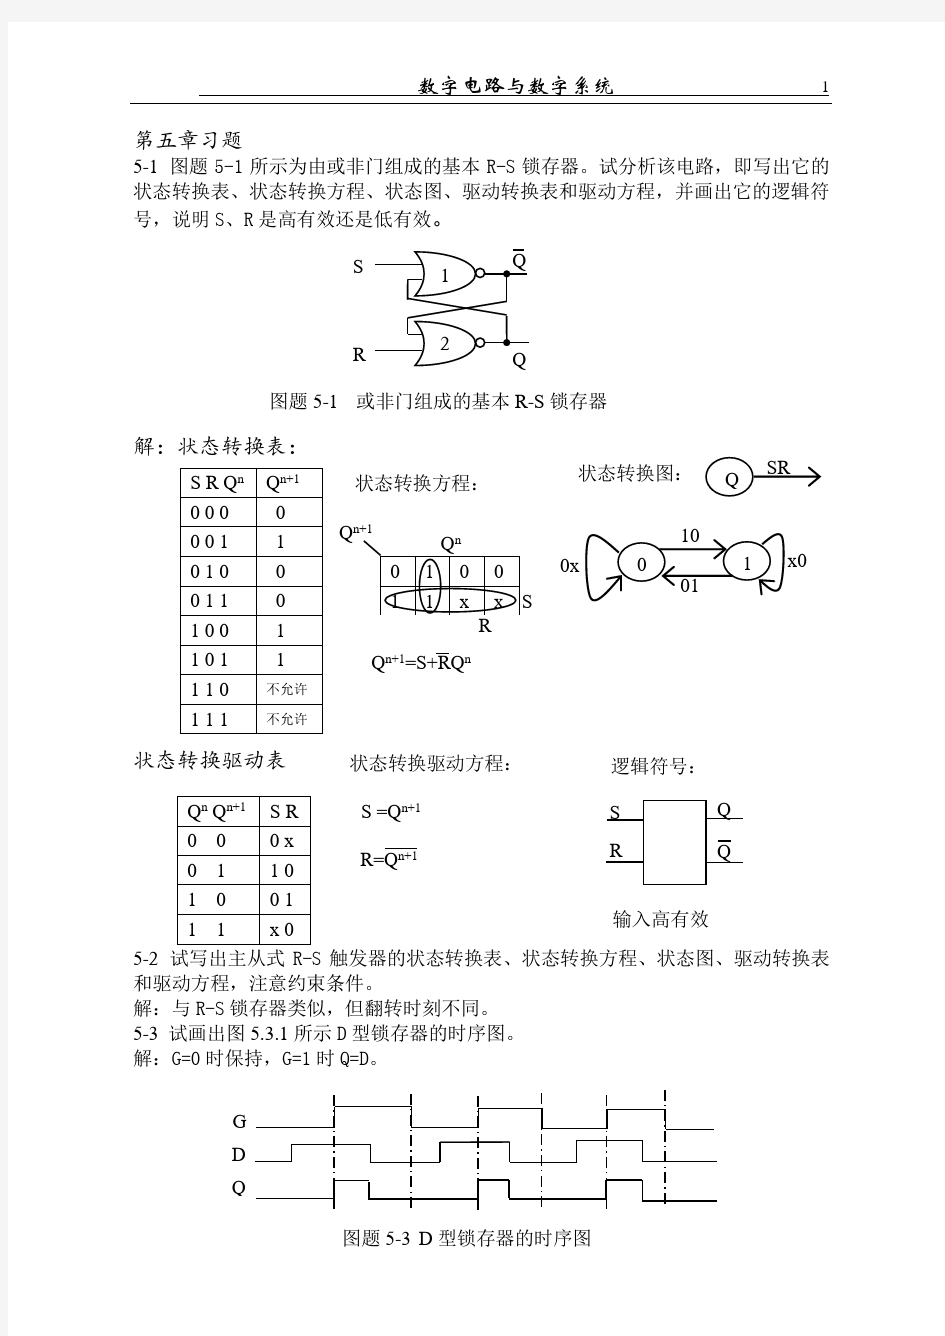 《数字电路-分析与设计》1--10章习题及解答(部分)_北京理工大学出版社